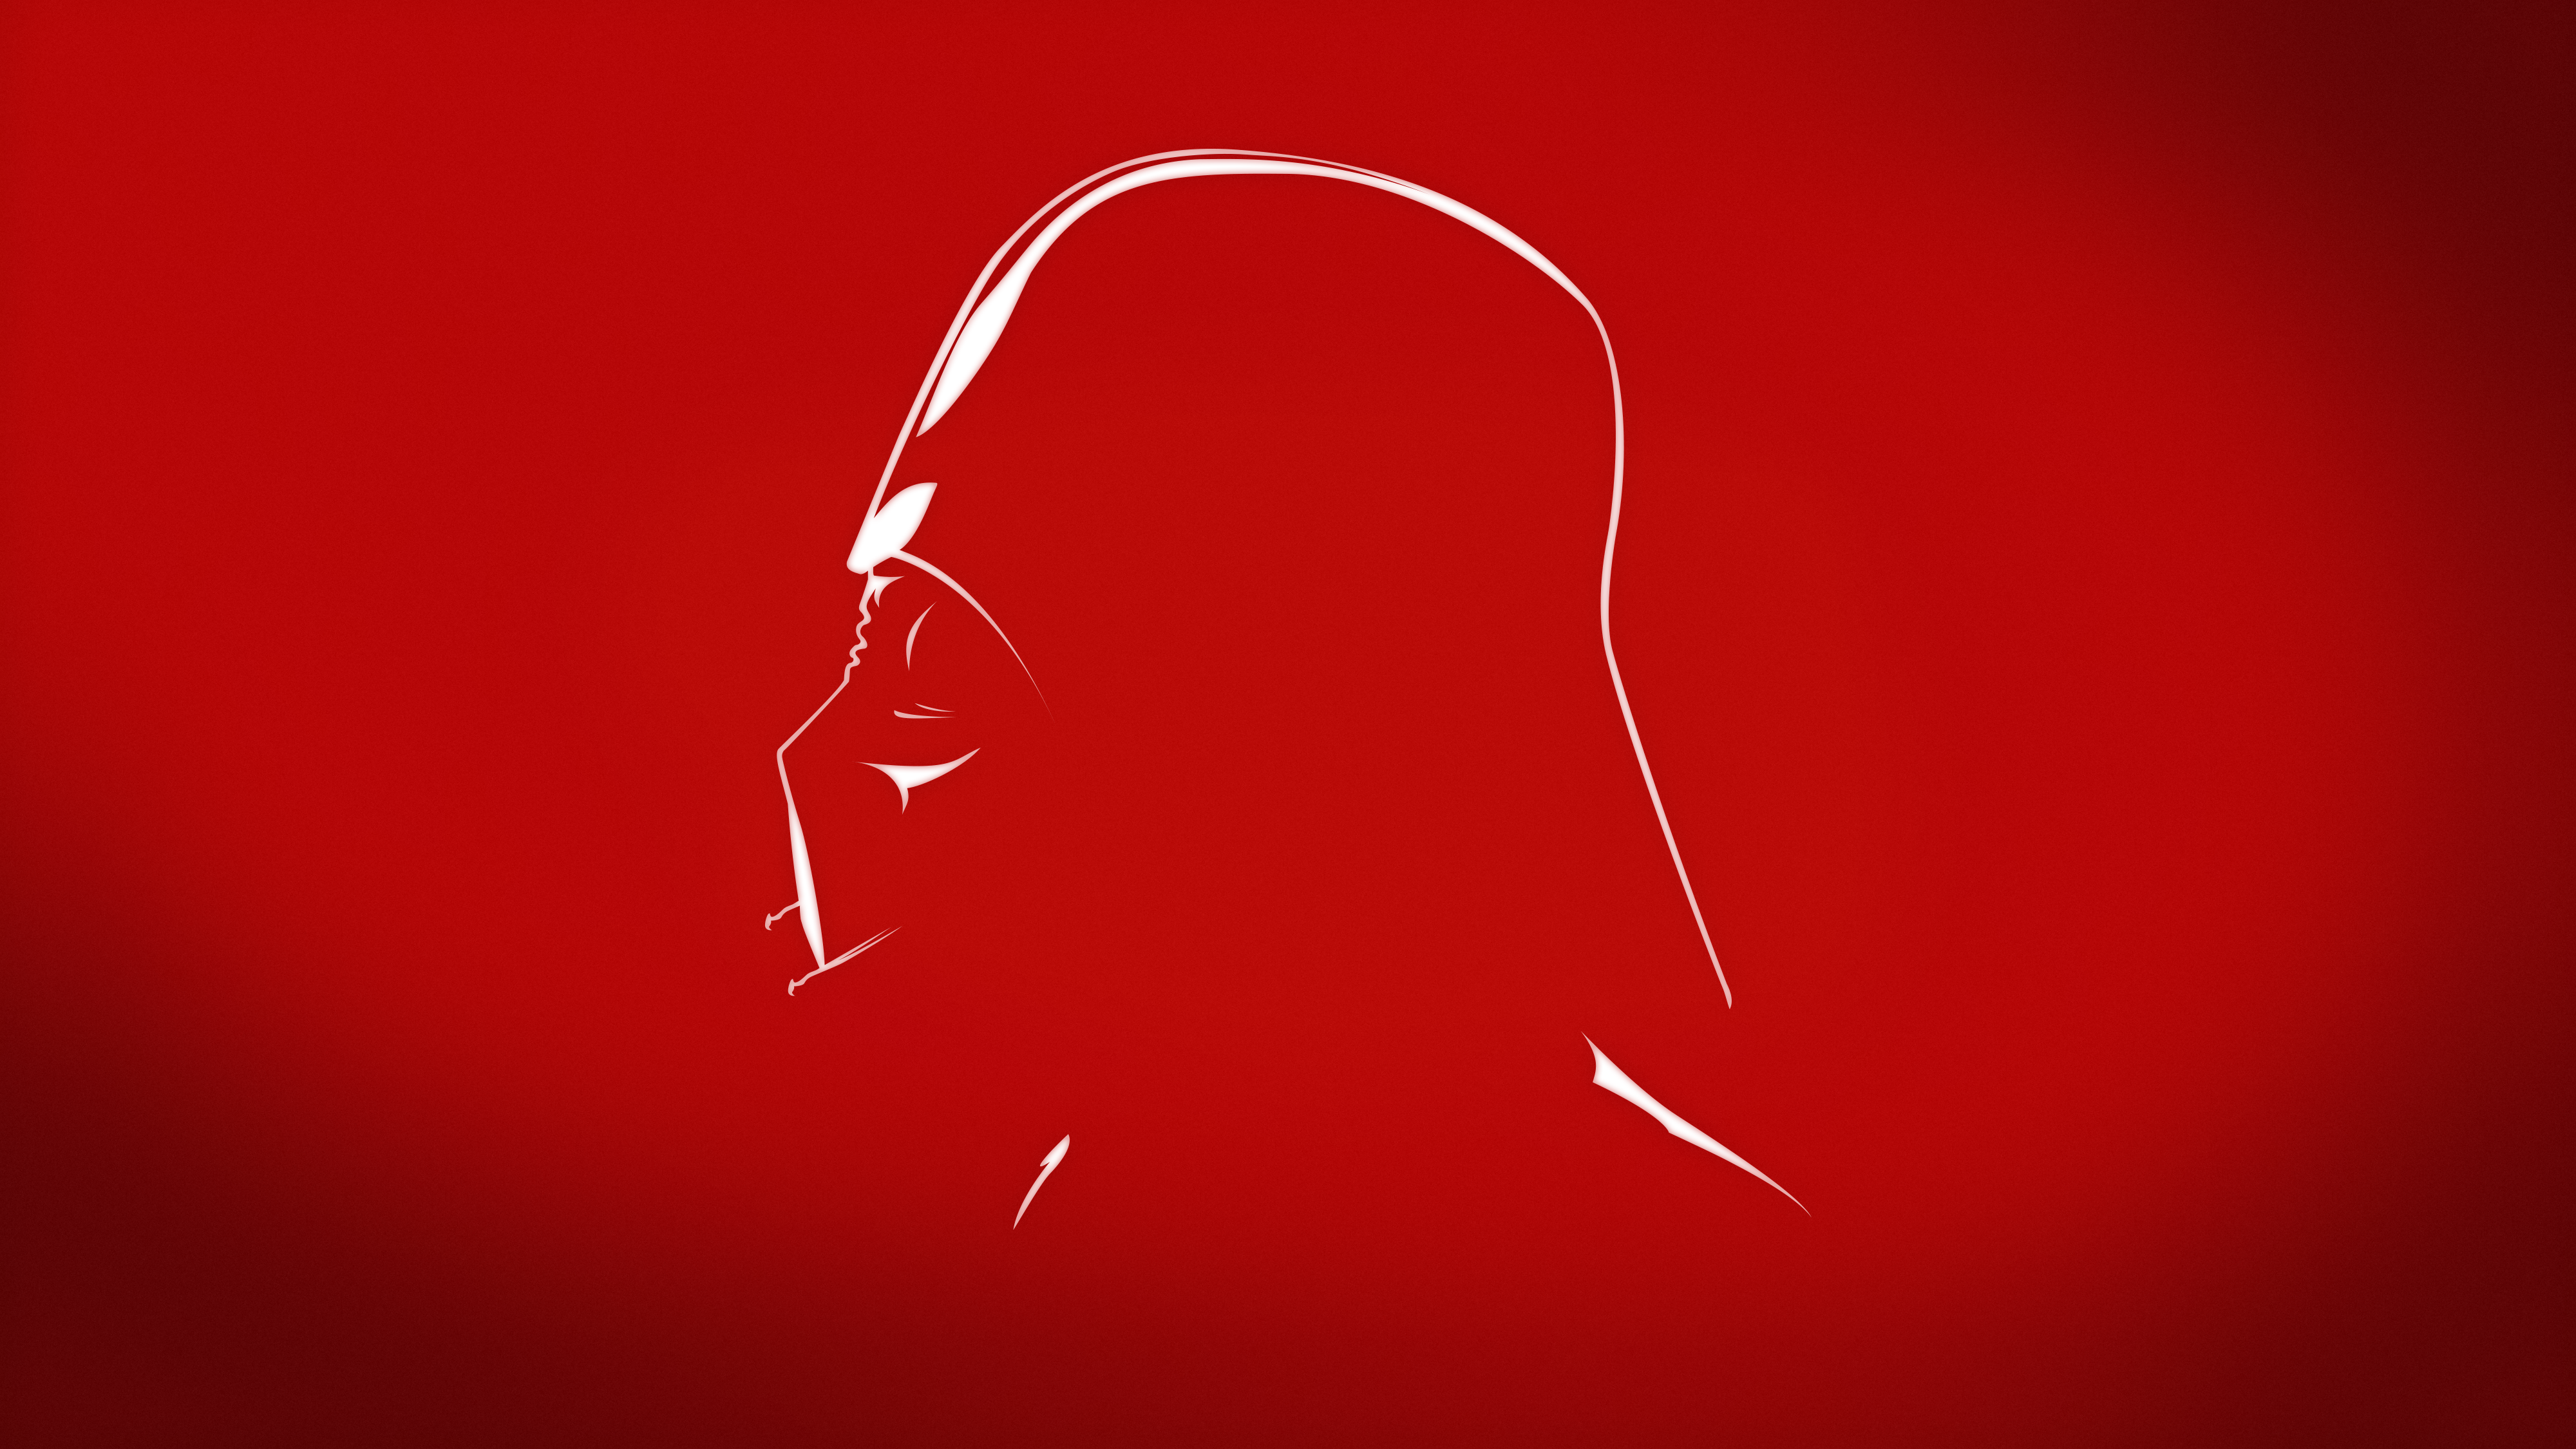 Darth Vader Minimalist Star Wars Wallpaper:4000x2250